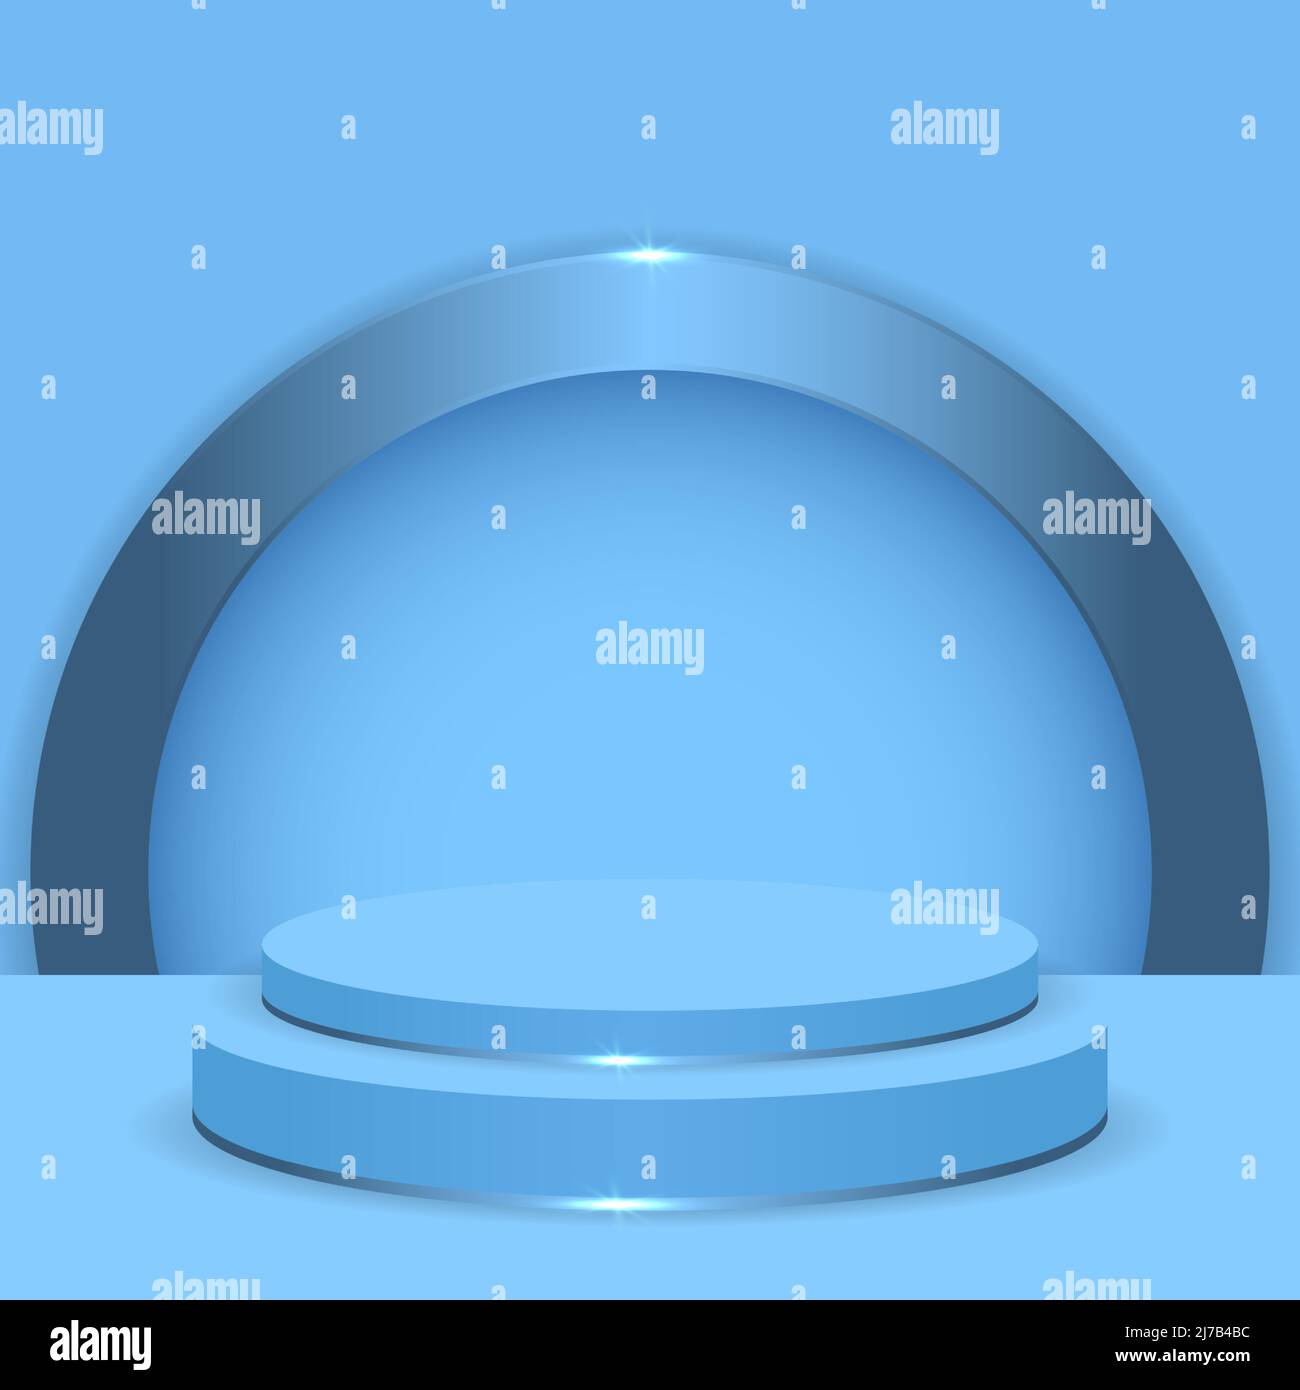 Hellblaues 3D realistisches Podium auf blauem Hintergrund mit metallisch blauem Bogen. Dreidimensionaler Bühnenpodest oder Plattform. Abstrakte runde Anzeigeszene Stock Vektor